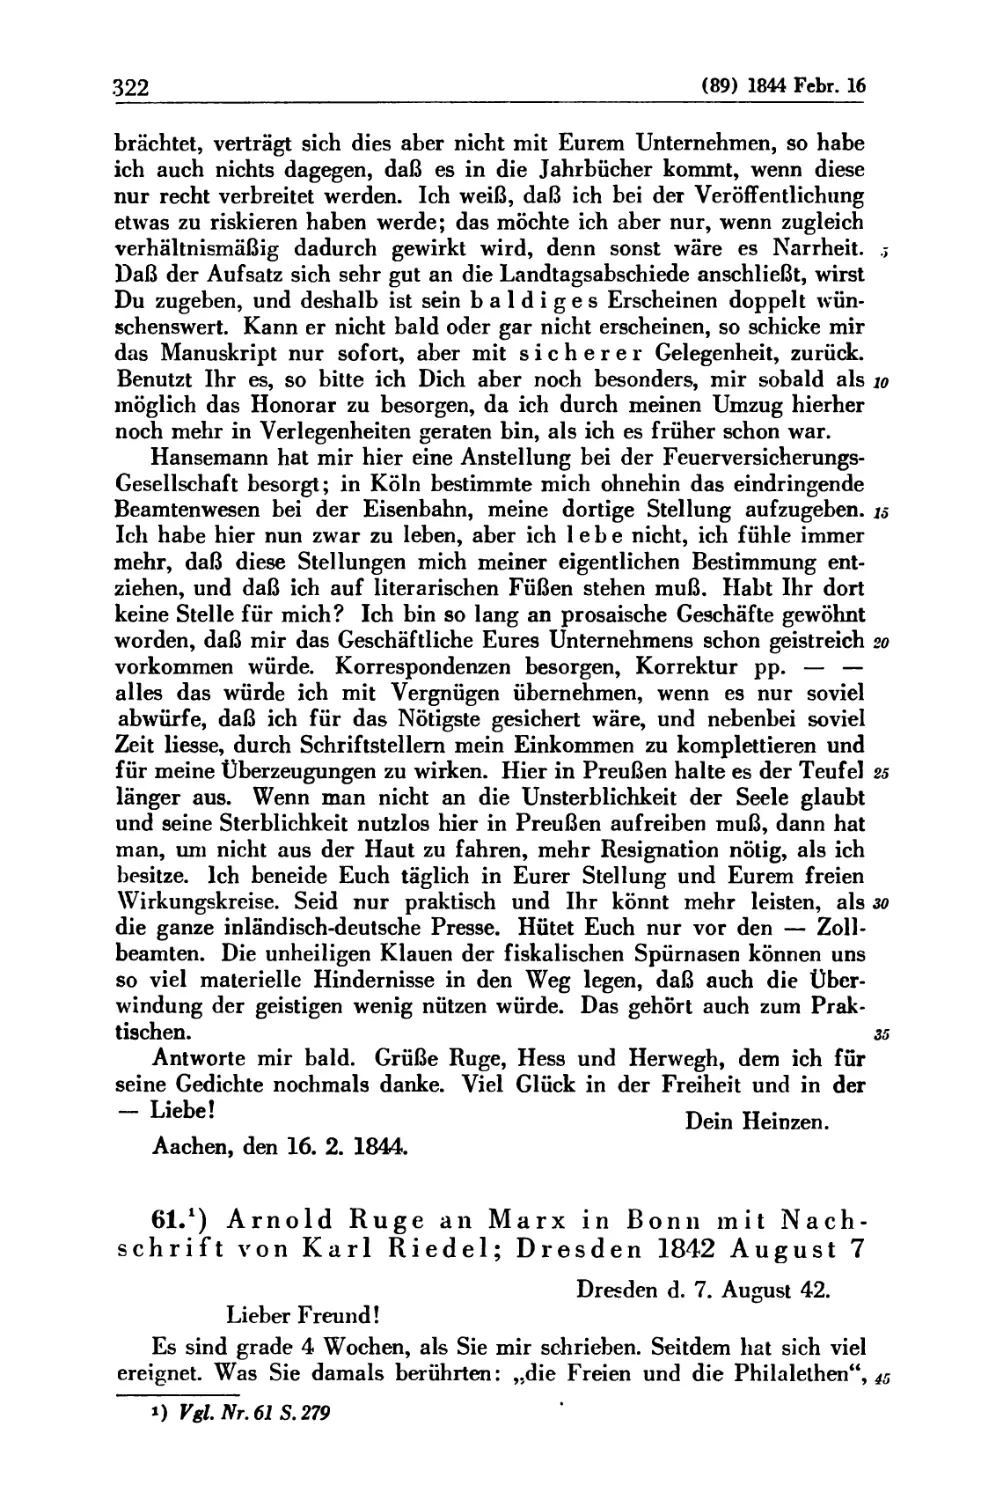 Zu 61. Arnold Ruge an Marx in Bonn mit Nachschrift von Karl Riedel; Dresden 1842 August 7